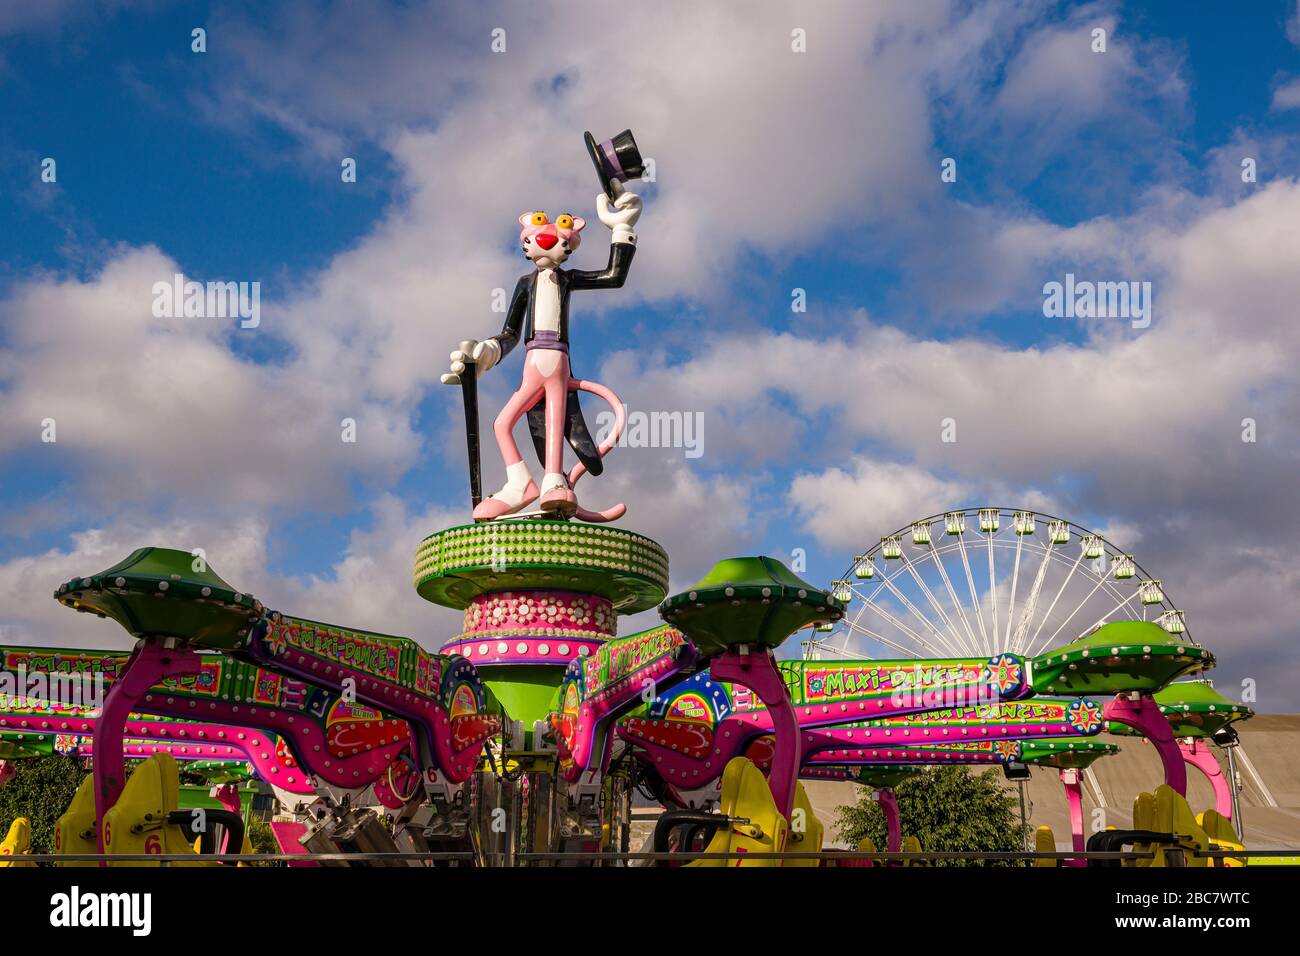 Sculpture colorée du personnage de bande dessinée Pink Panther dans un parc d'attractions Banque D'Images